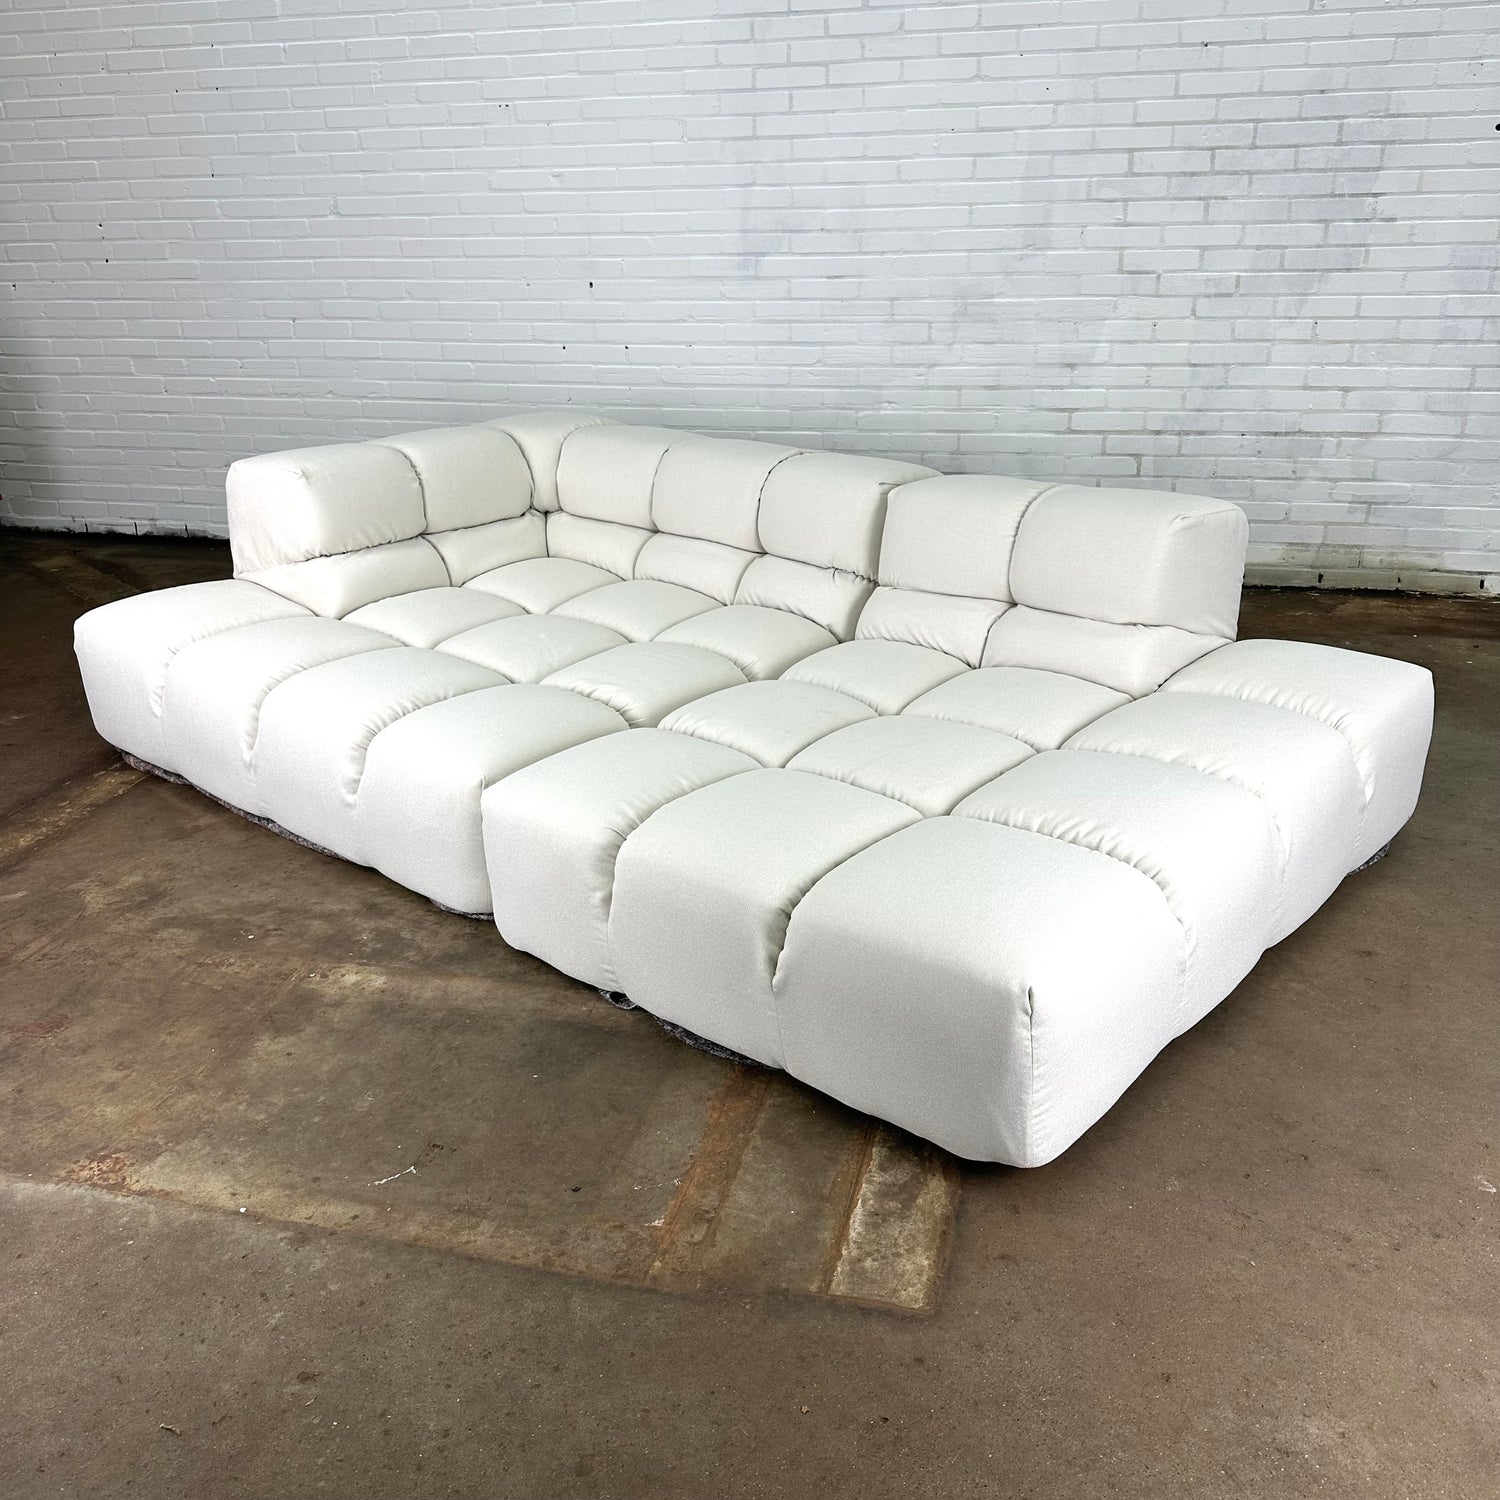 Tufty-time-b-b-italia-sofa